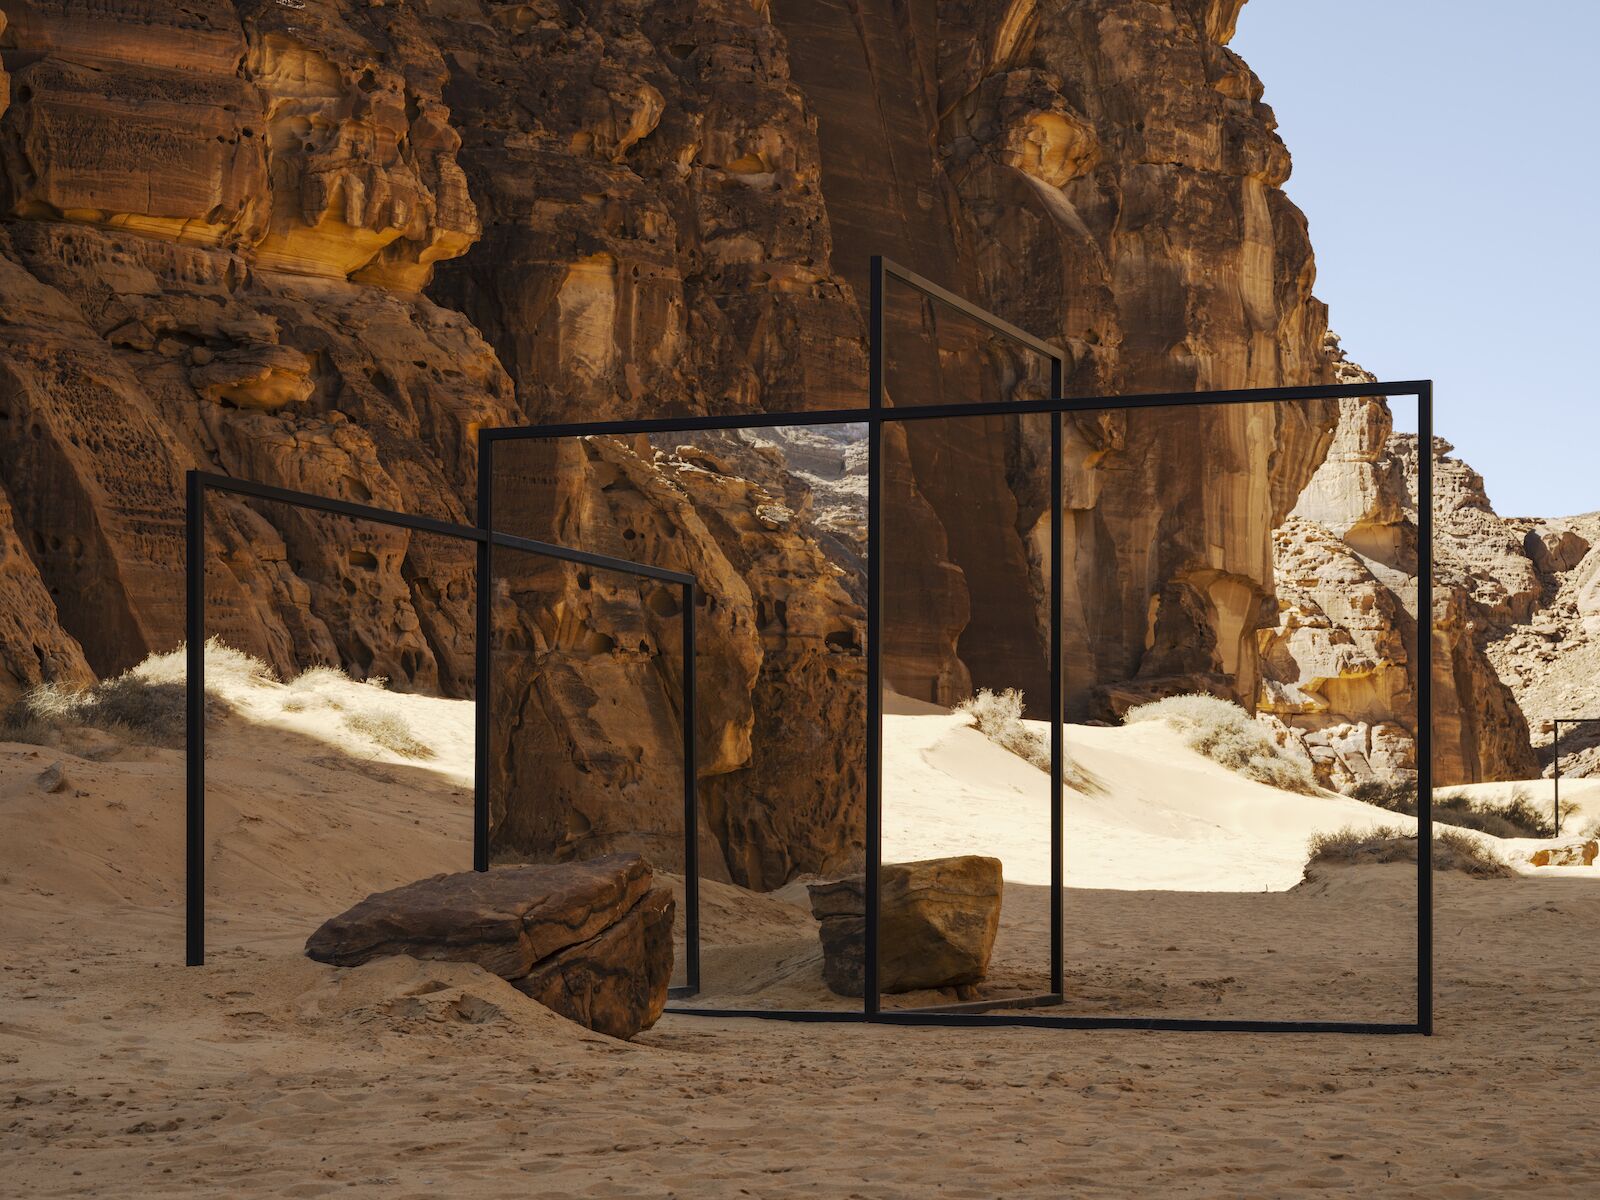 Artwork of mirrors in the Saudi Arabian desert for Desert X 2022.